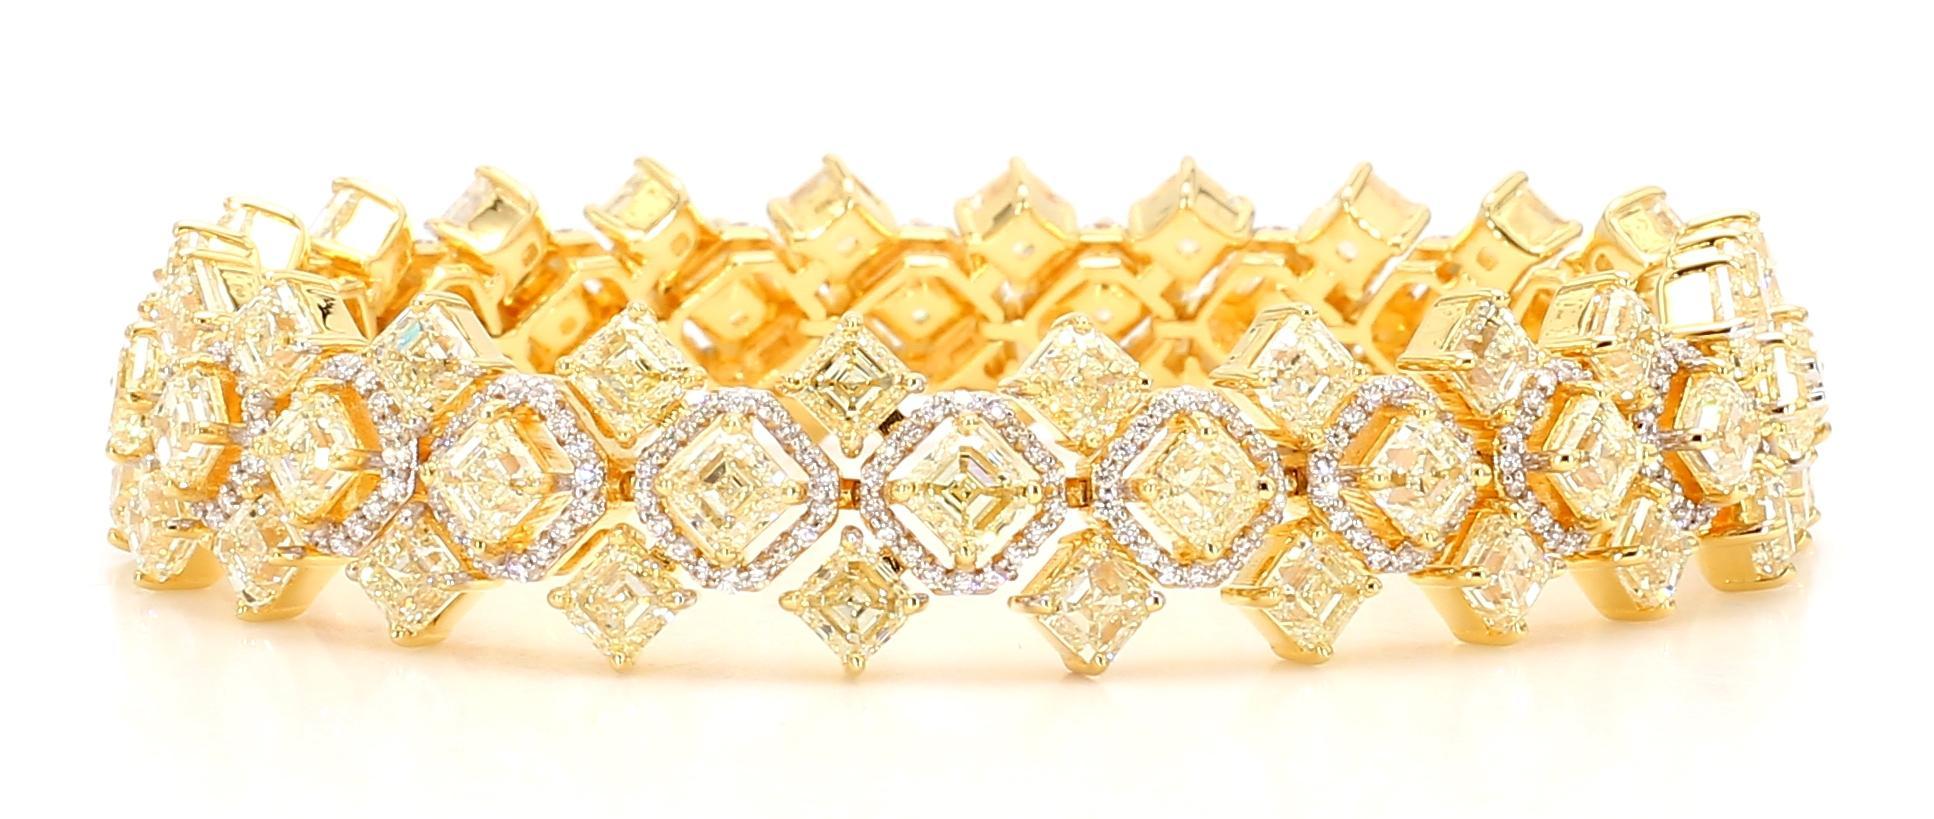 Ce bracelet jaune exquis est un véritable chef-d'œuvre. Il est orné d'un magnifique diamant jaune de couleur fantaisie pesant 23,30 carats. La teinte jaune vibrante de ce diamant est captivante et rehausse la beauté de l'ensemble de la pièce.

Le